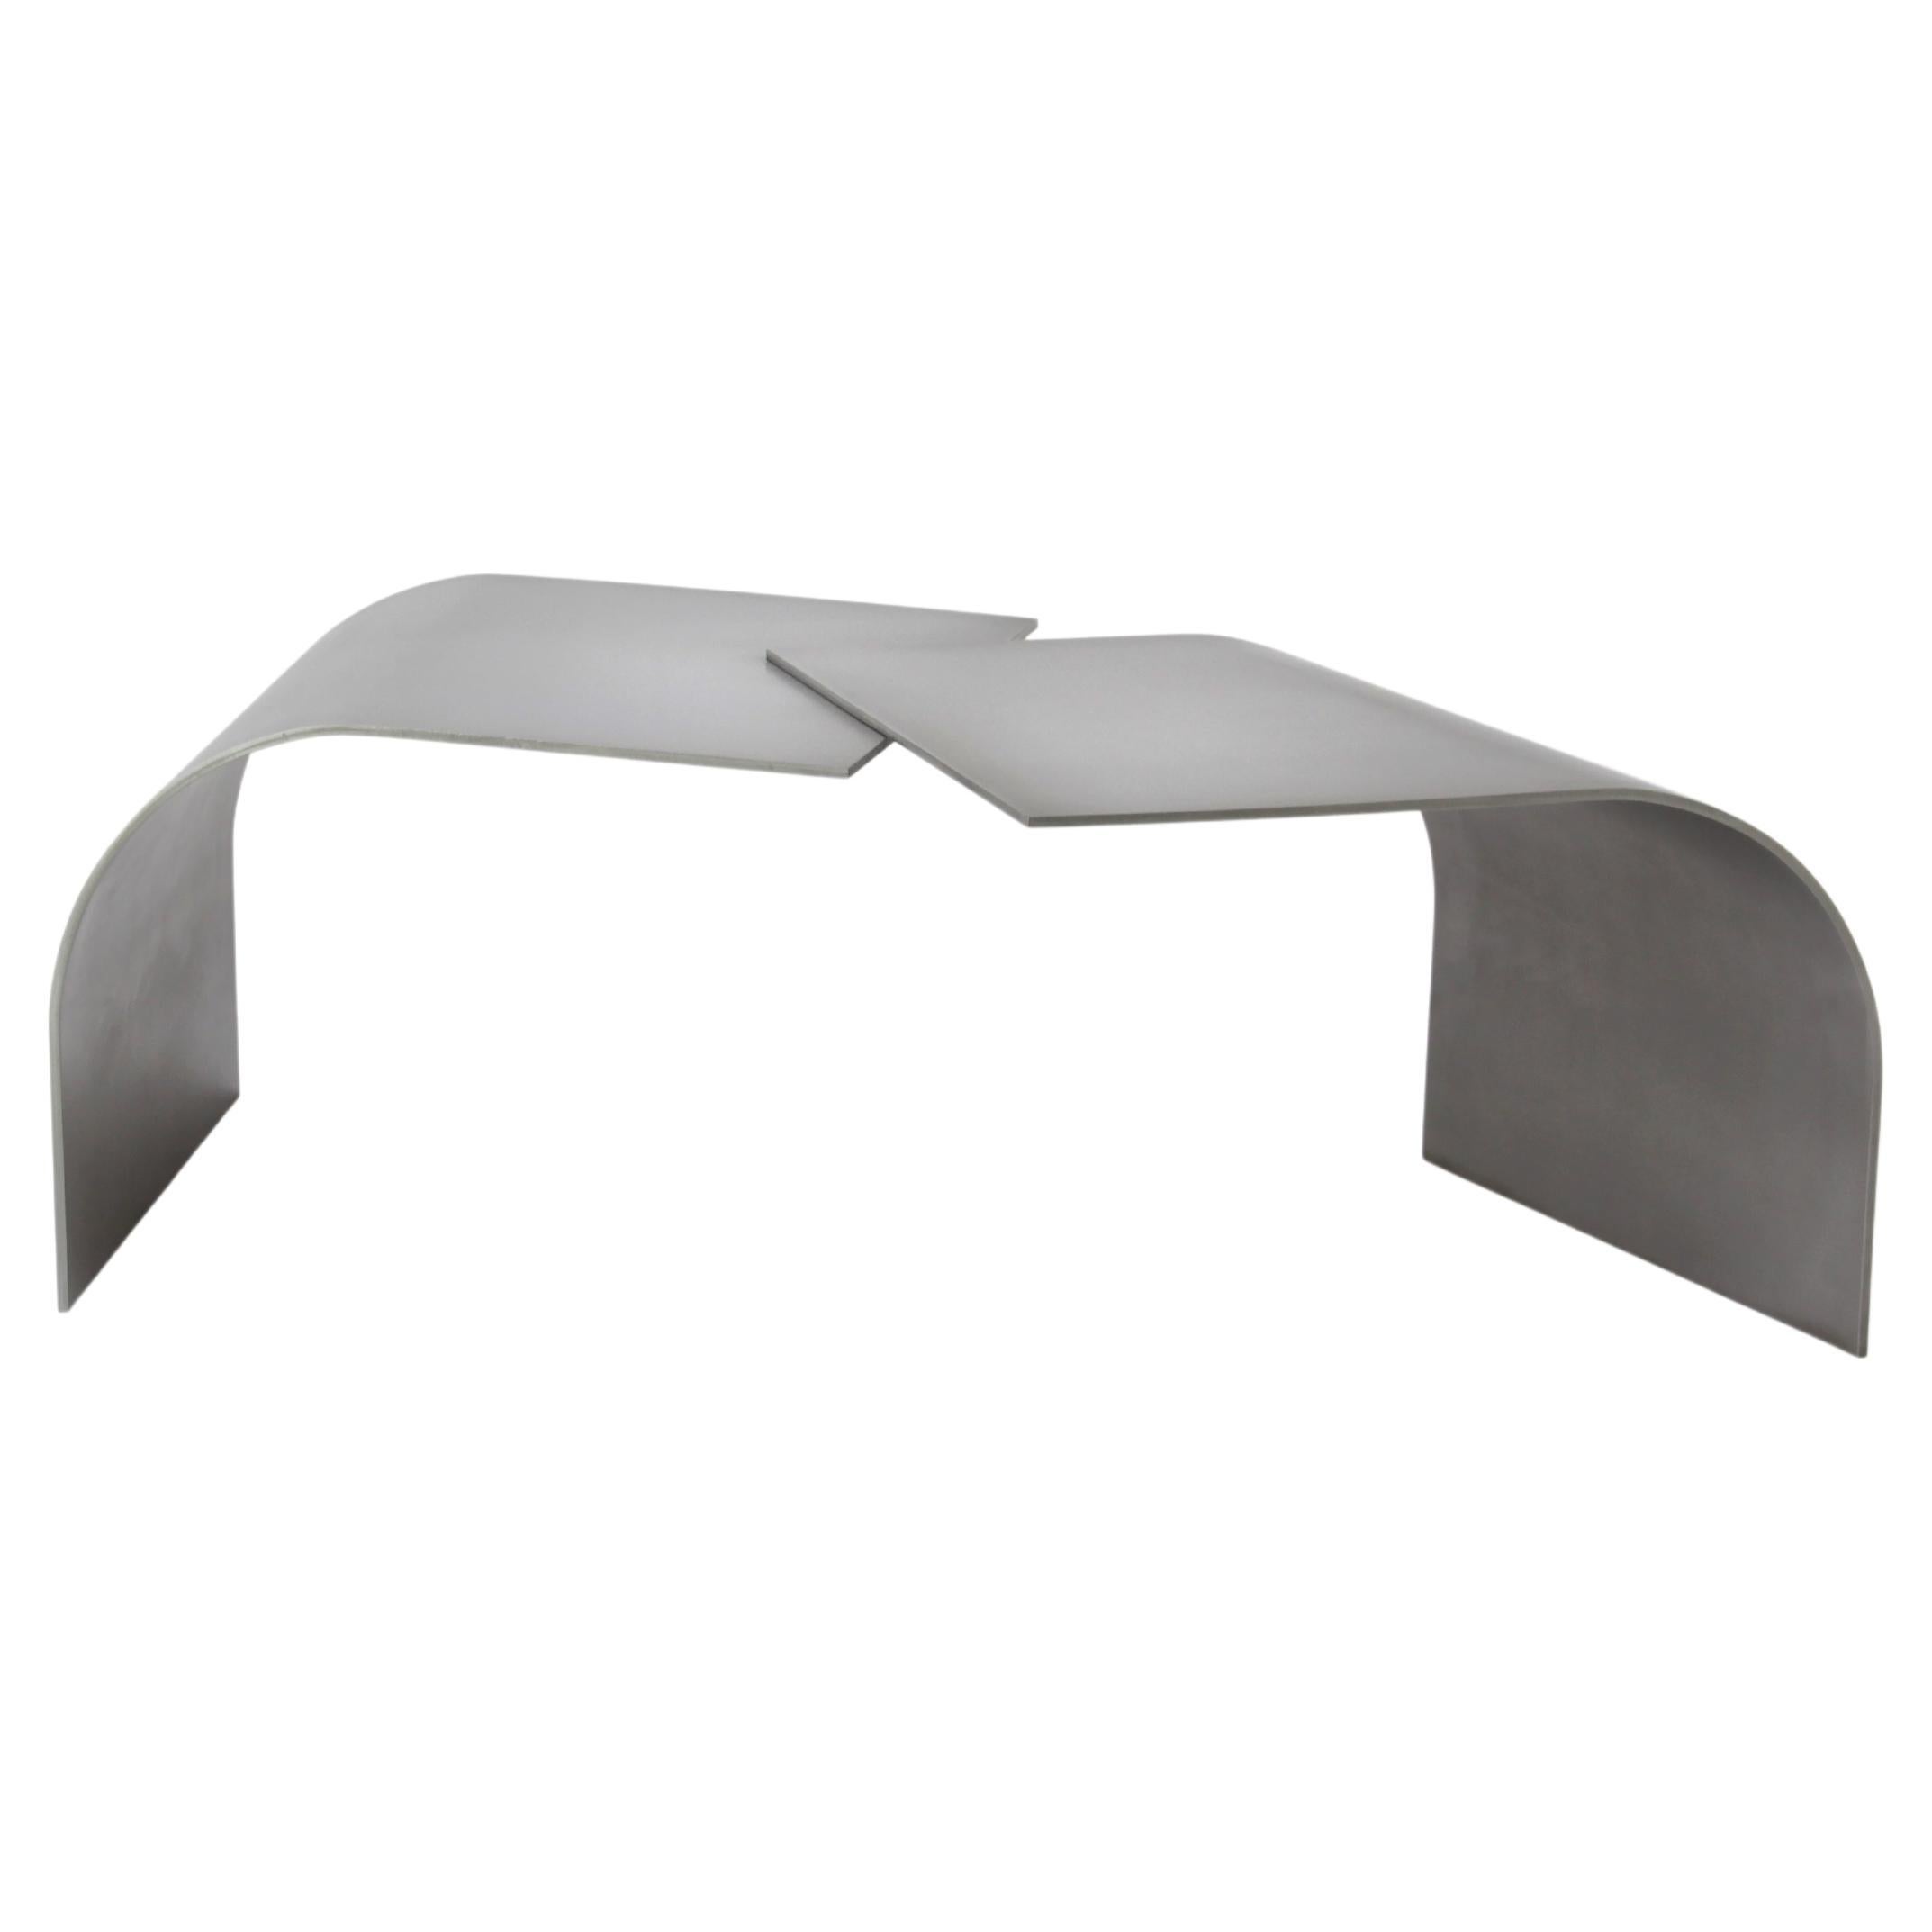 Table basse contemporaine et minimaliste en acier inoxydable gris Wals par Maria Tyakina